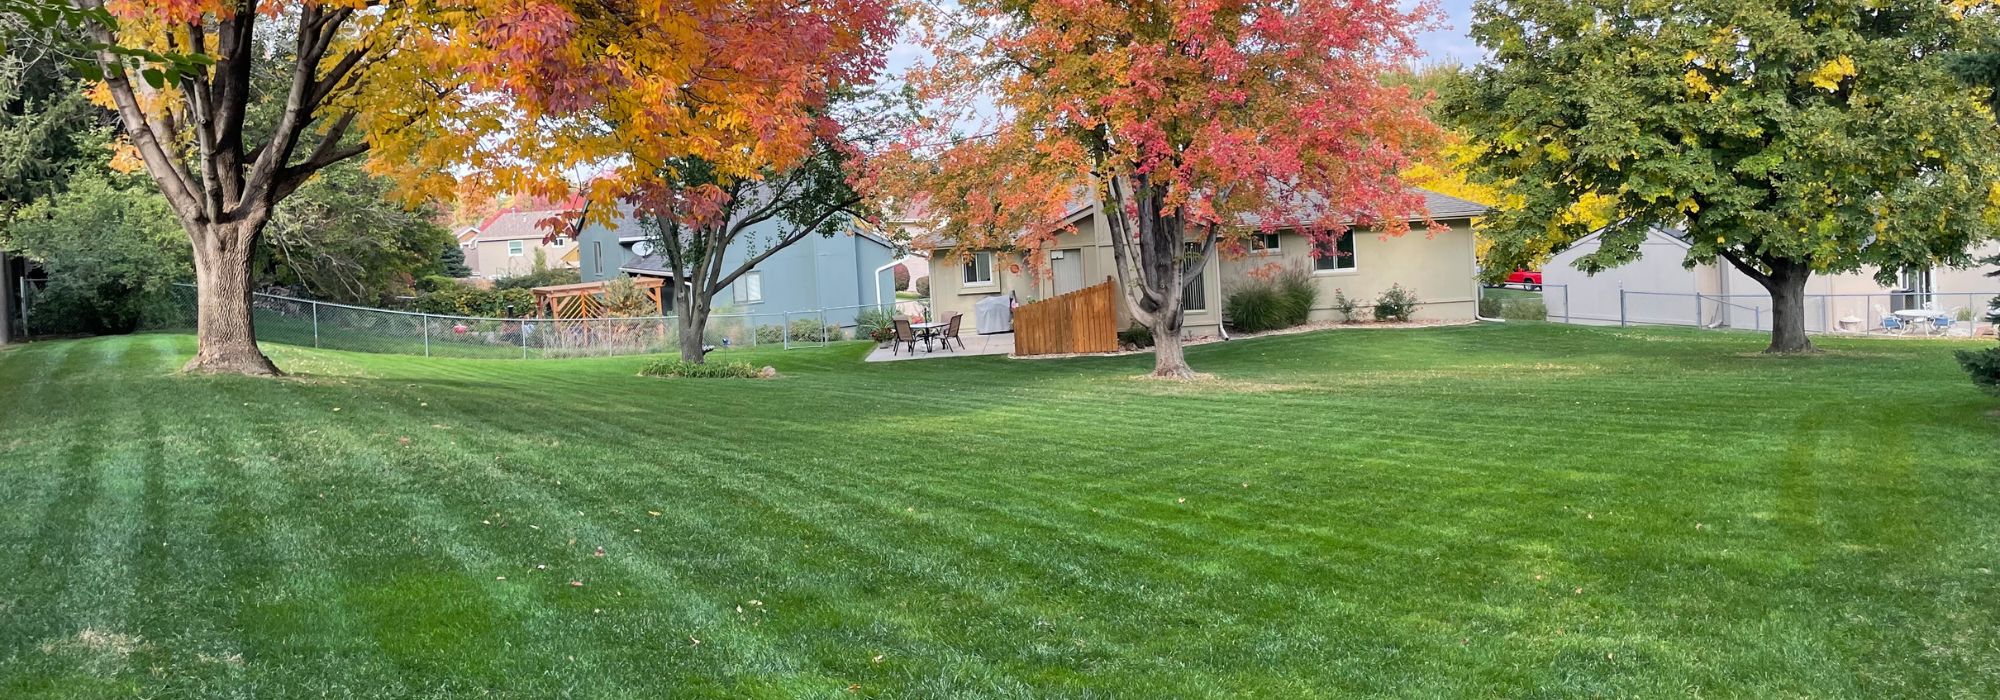 Lawn by Bill - Omaha, NE